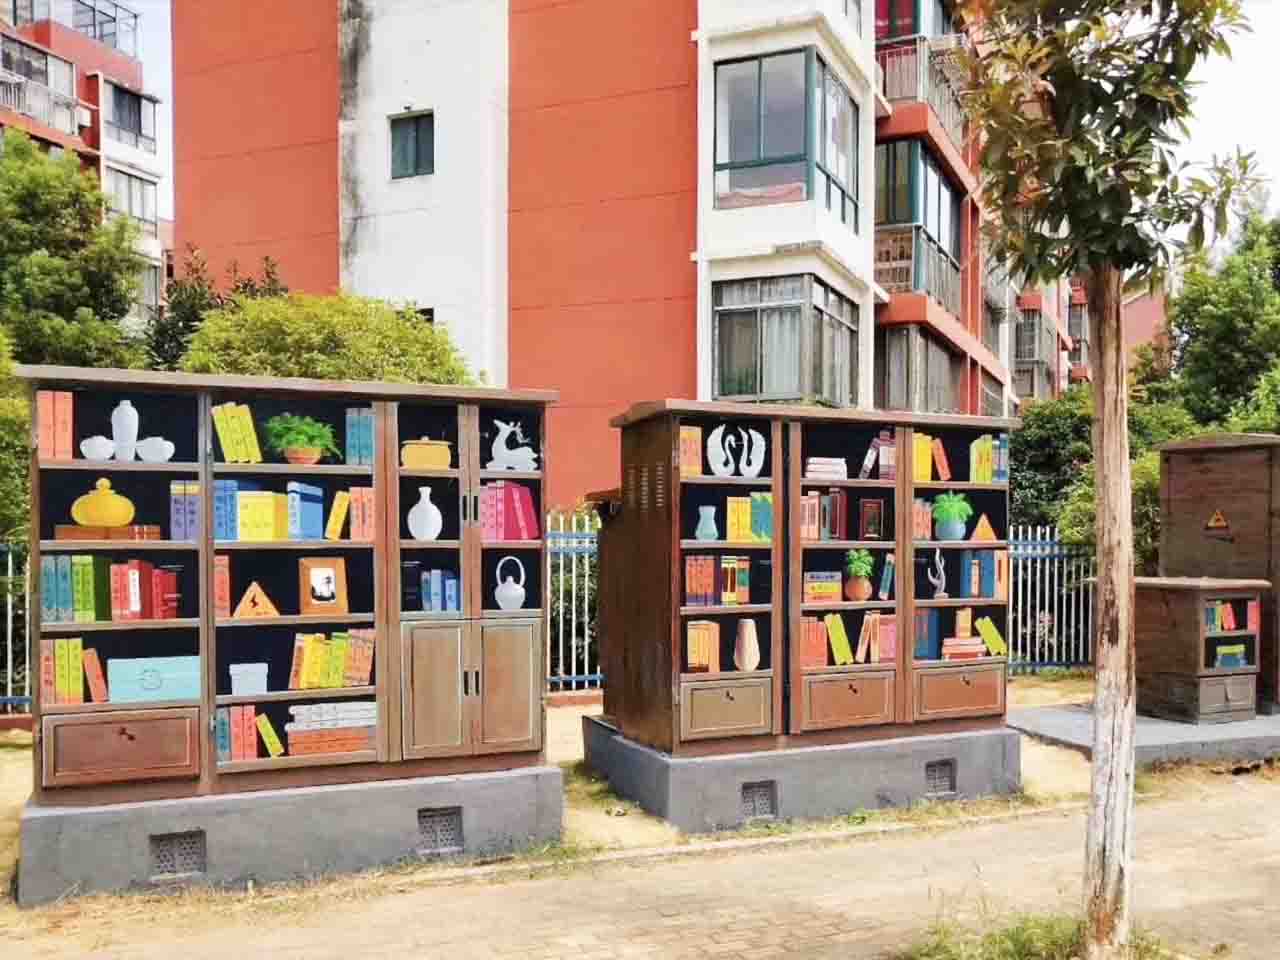 市政景区街道3D书架配变电箱墙绘壁画彩绘涂鸦手绘成都澜泉文化